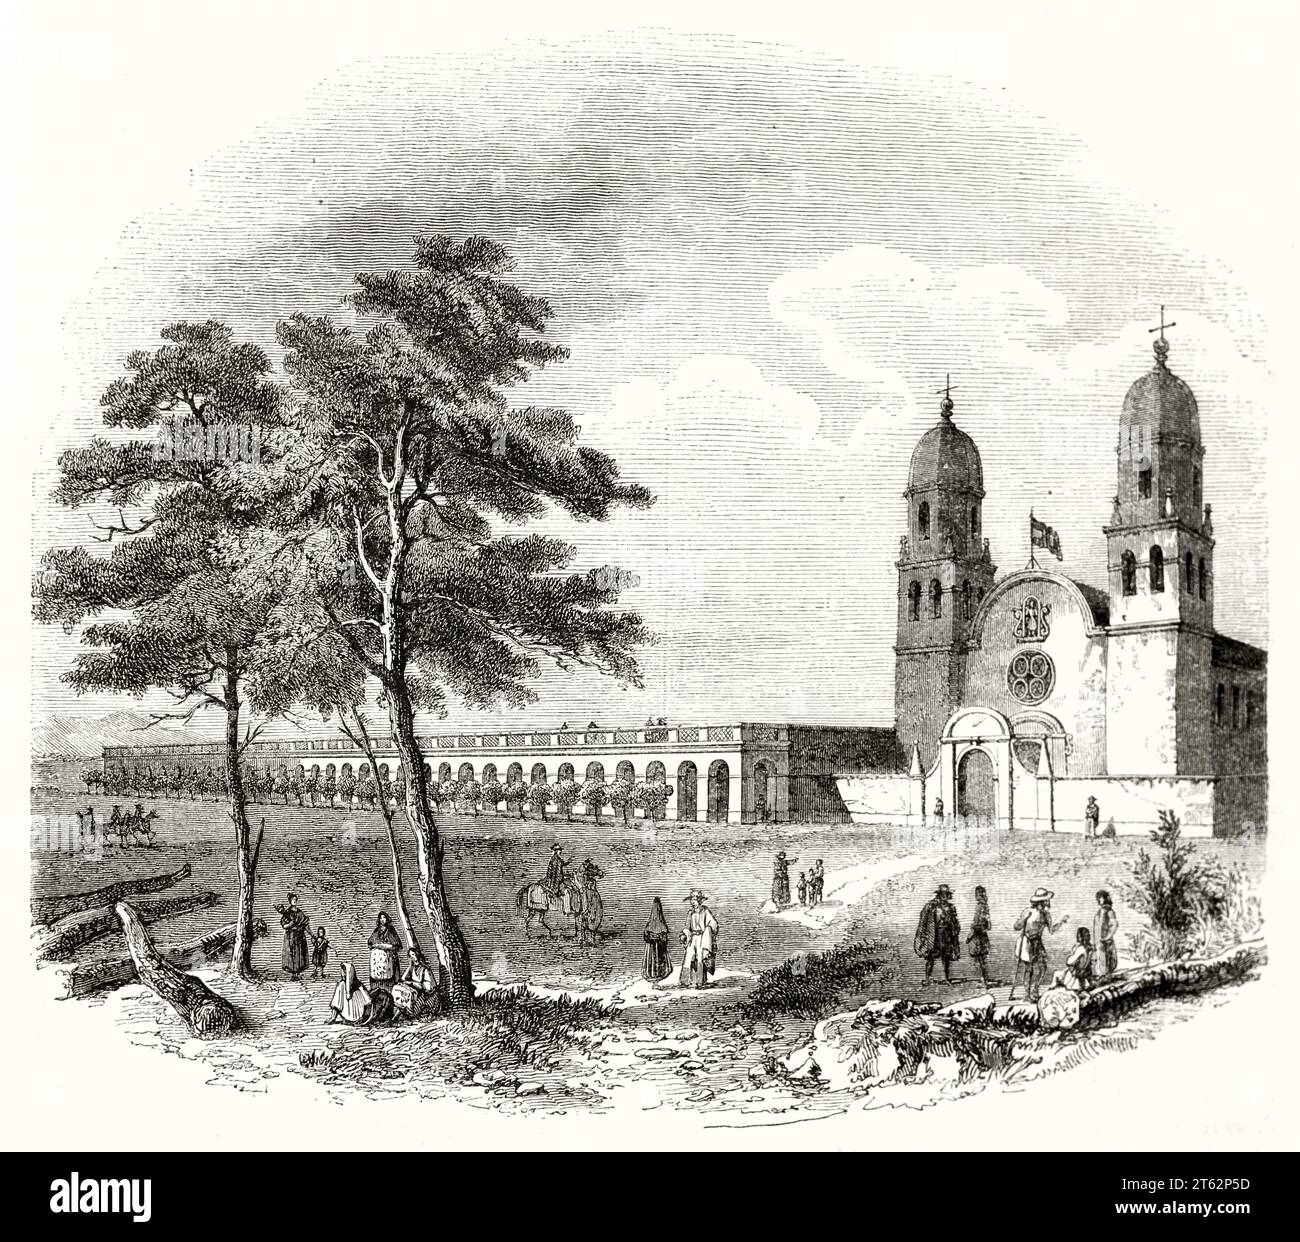 Vue ancienne de la mission Saint-Louis, Californie. Par Mofras, publ. Sur magasin pittoresque, Paris, 1849 Banque D'Images